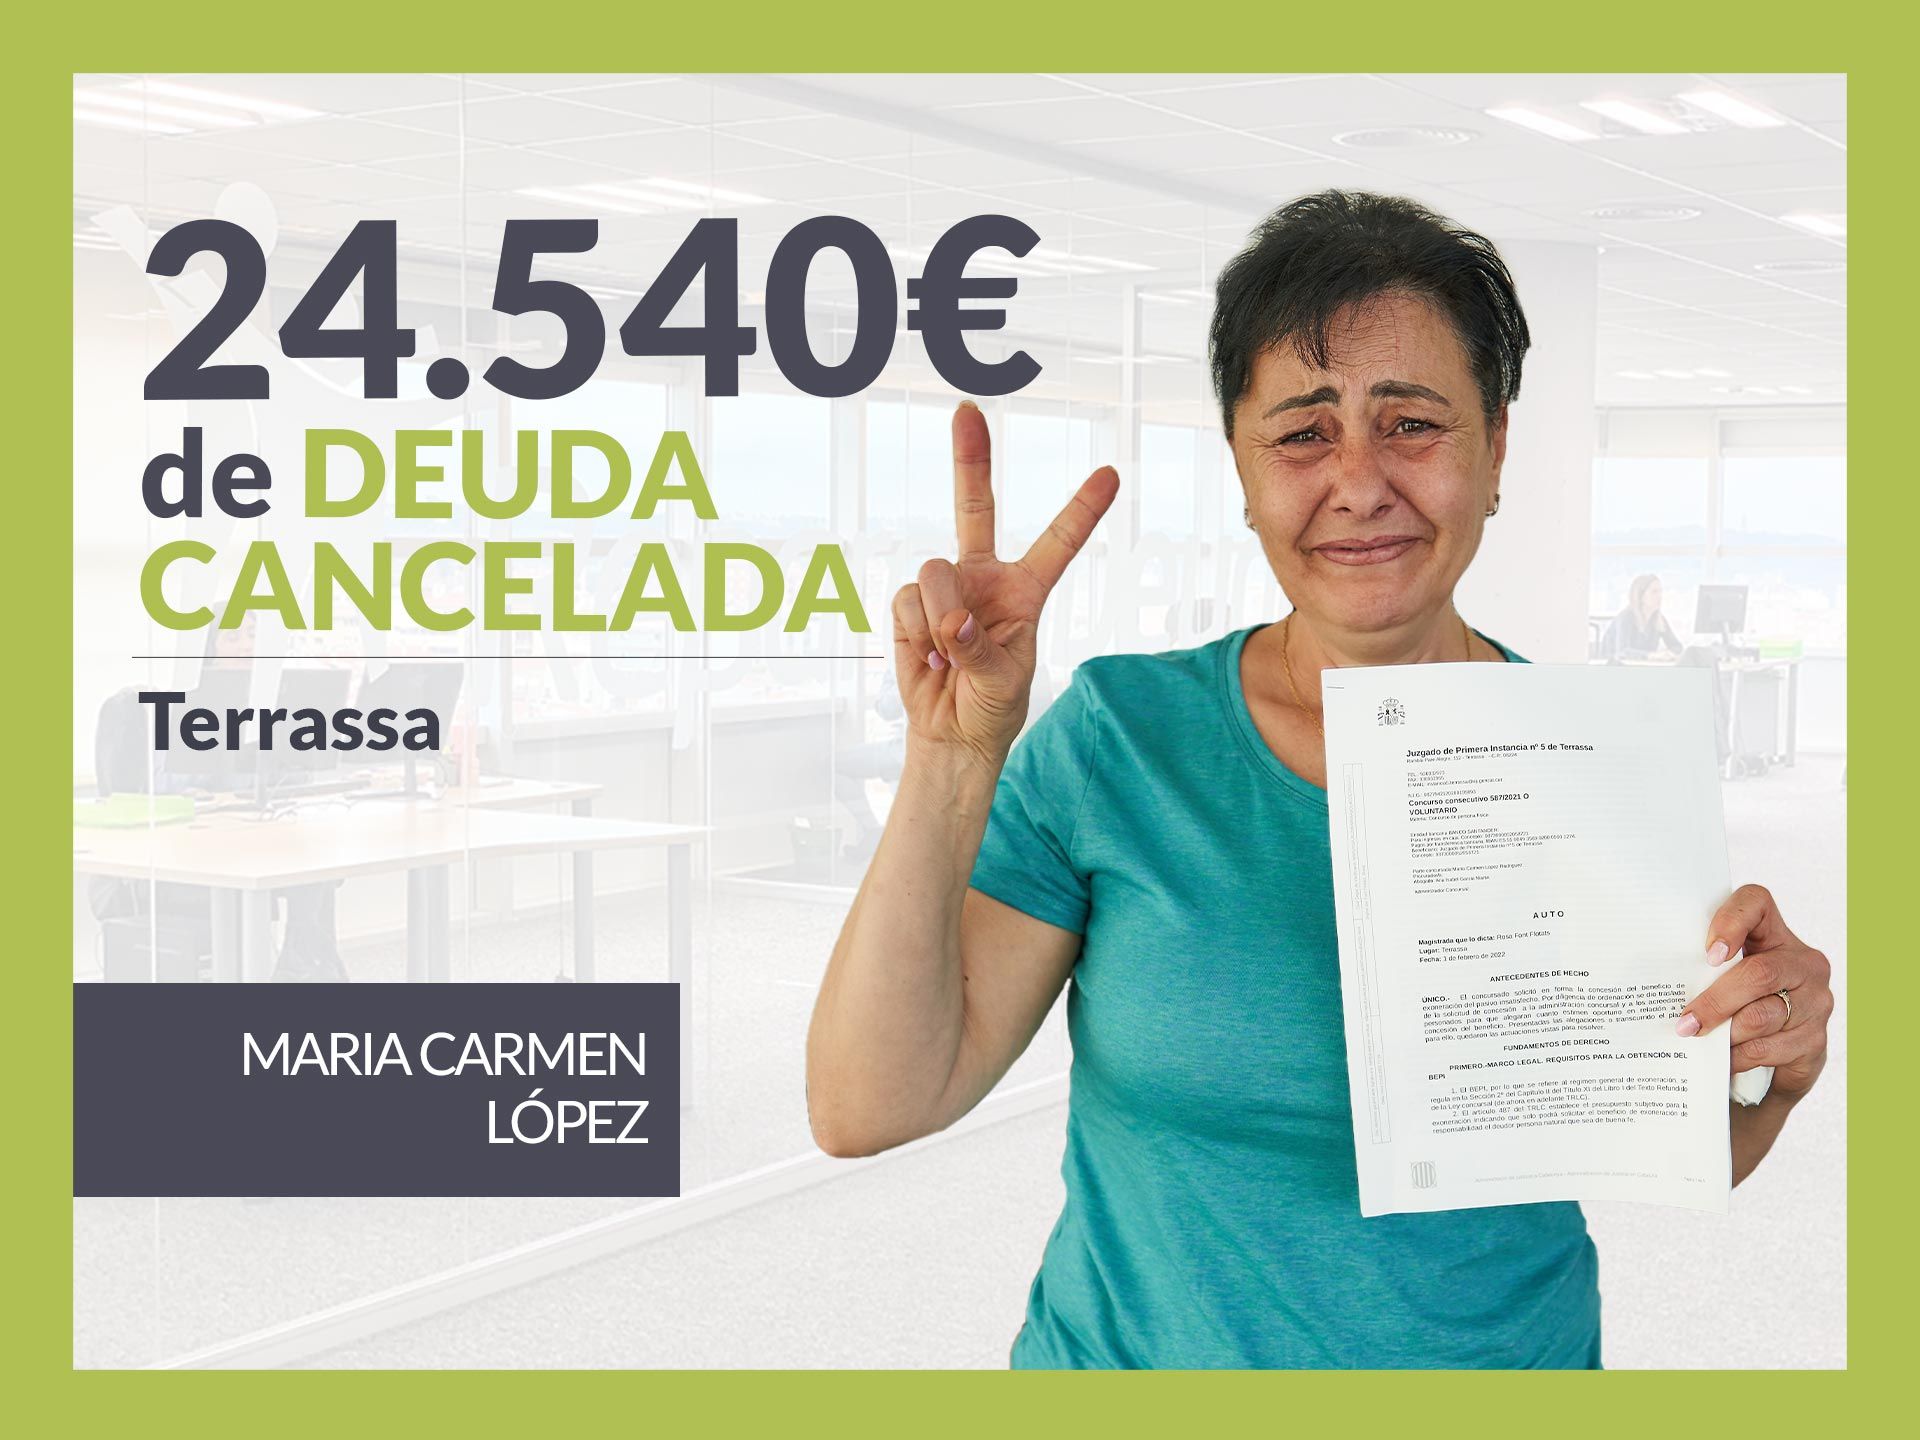 Repara tu Deuda Abogados cancela 24.540? en Terrassa (Barcelona) con la Ley de Segunda Oportunidad